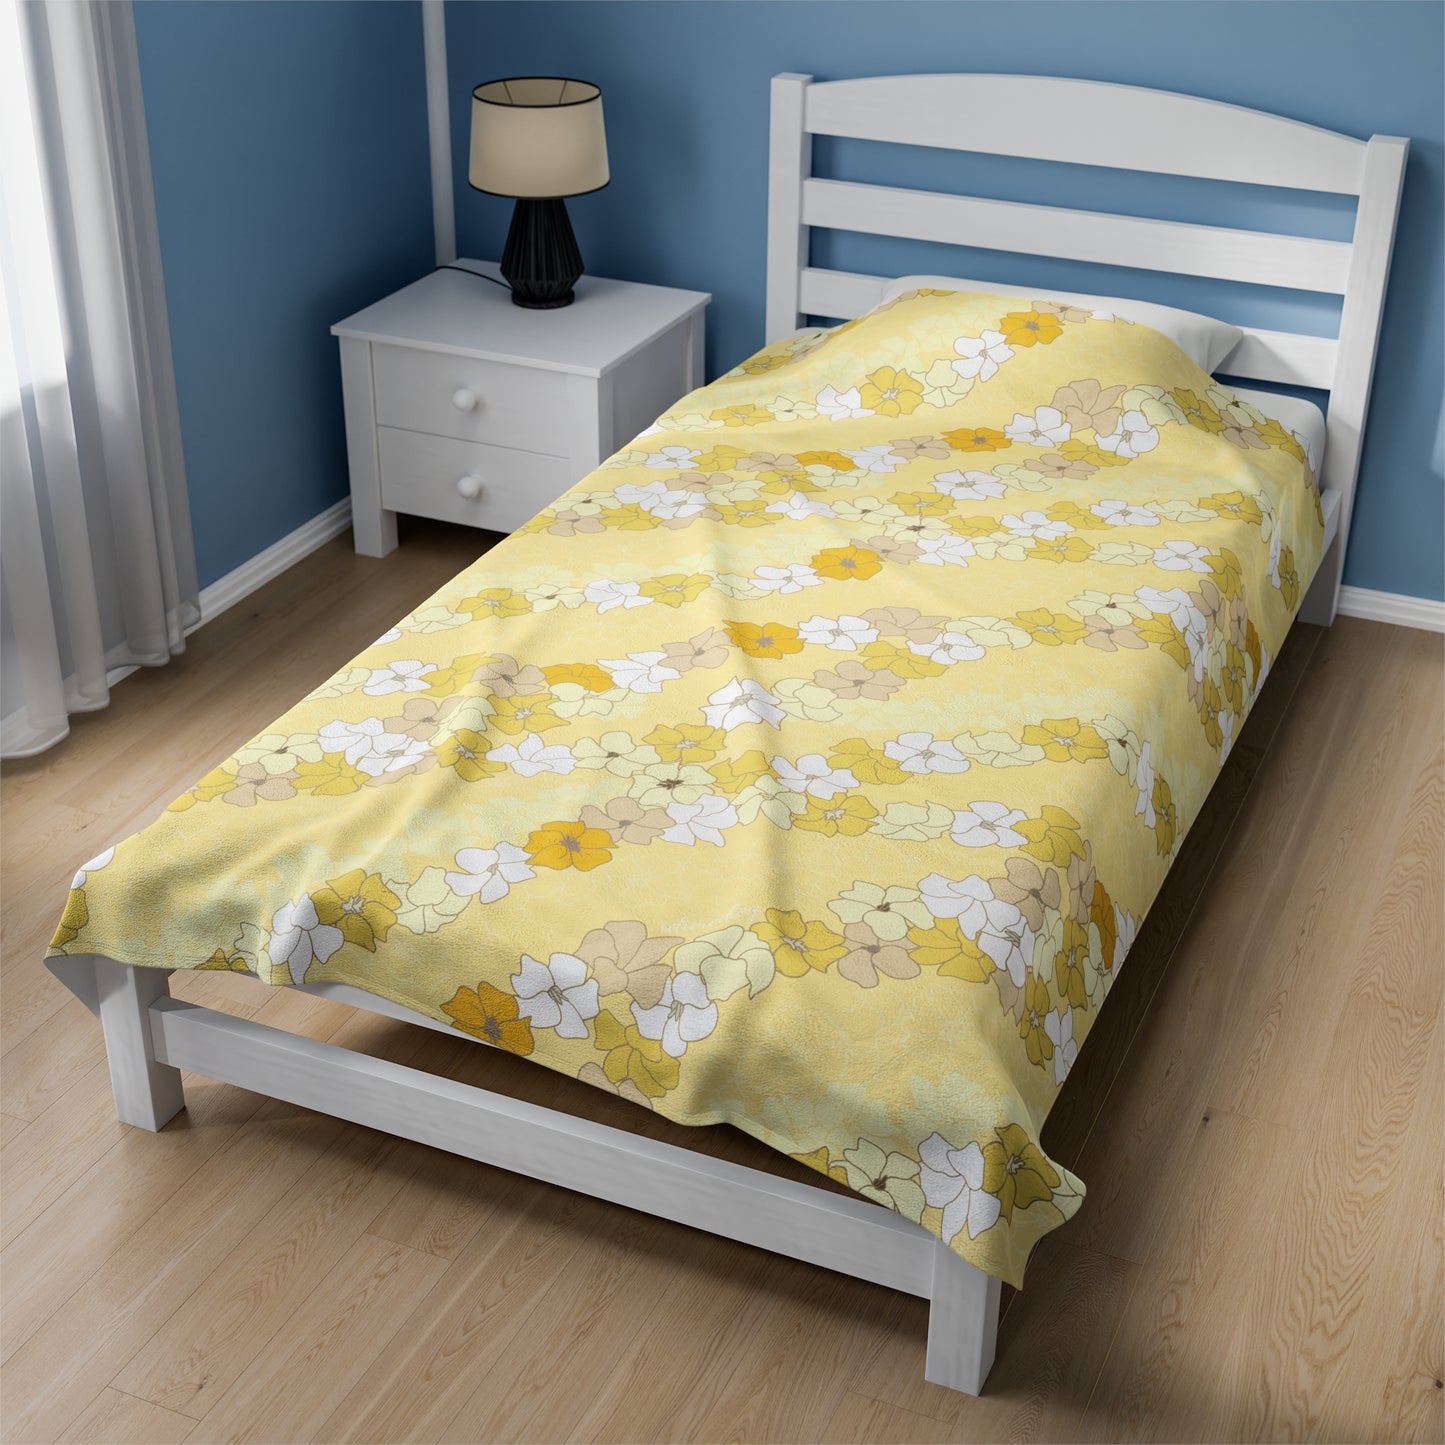 Incredibly Soft Plush Blanket- Puakenikeni En Face Flower Leis in Yellow